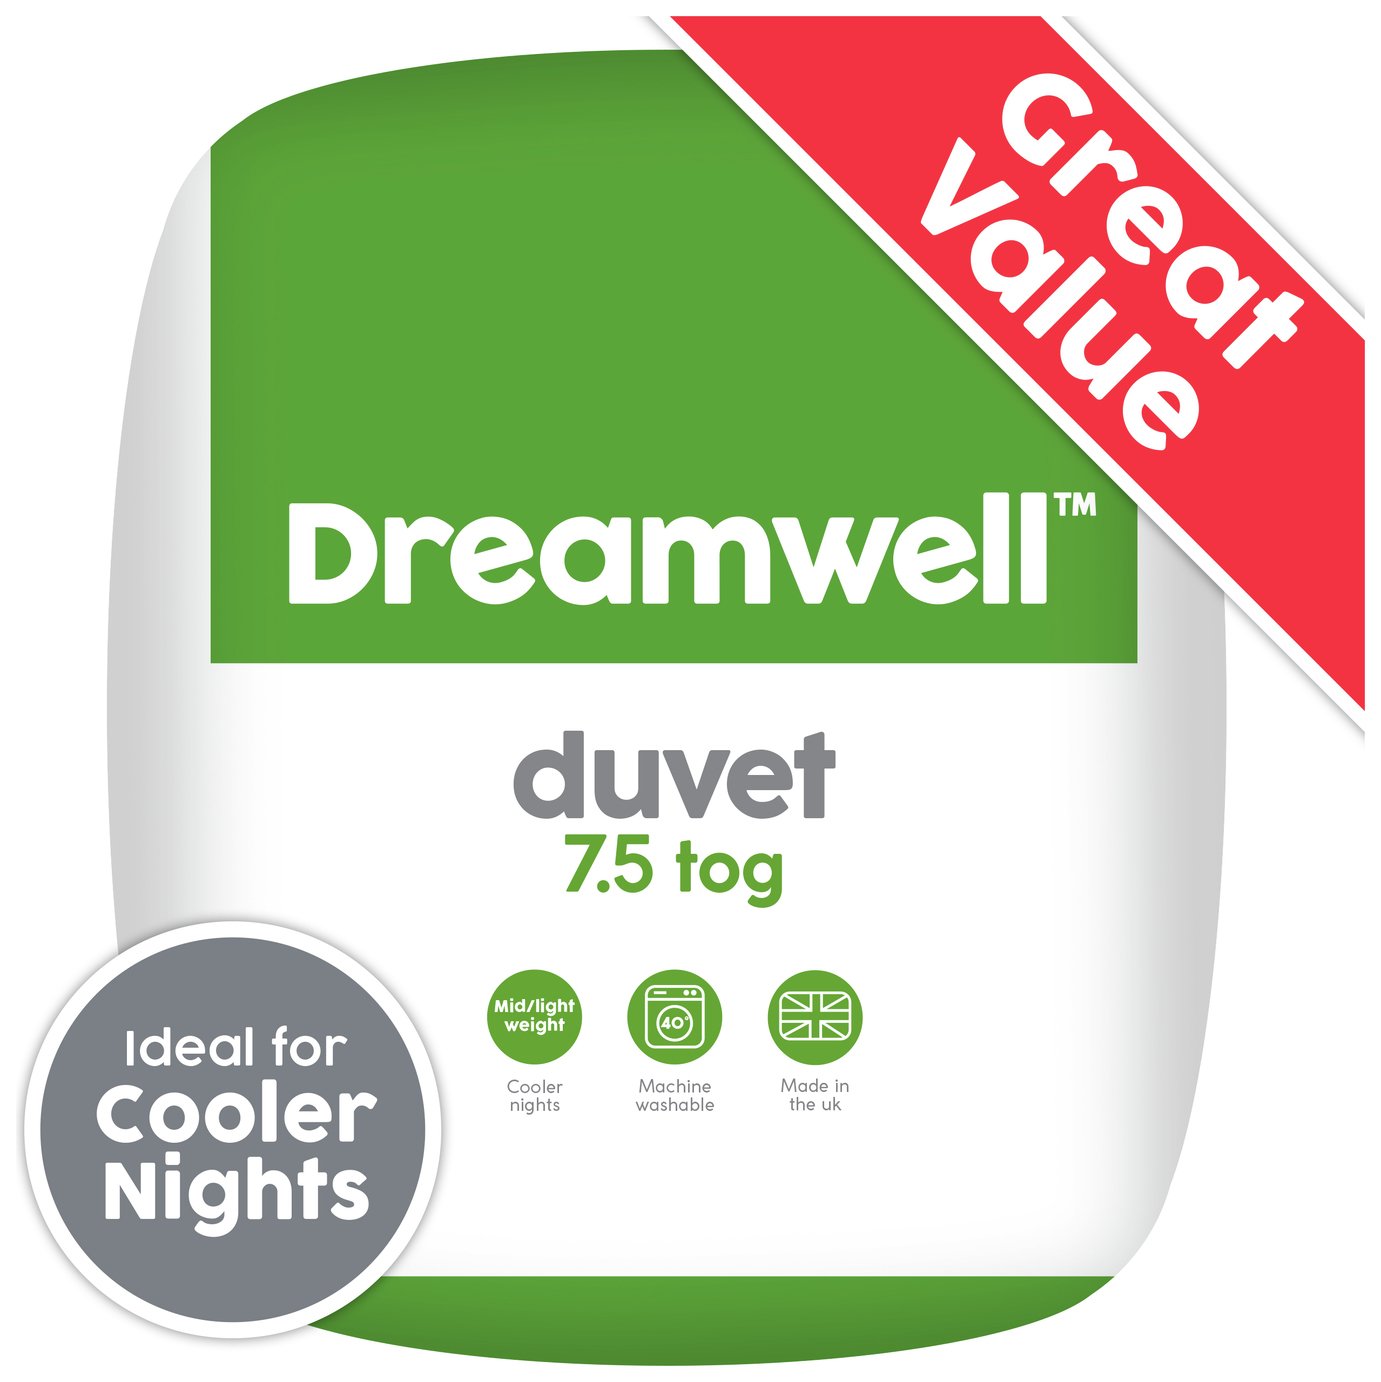 Dreamwell Medium Weight 7.5 Tog Duvet - Kingsize